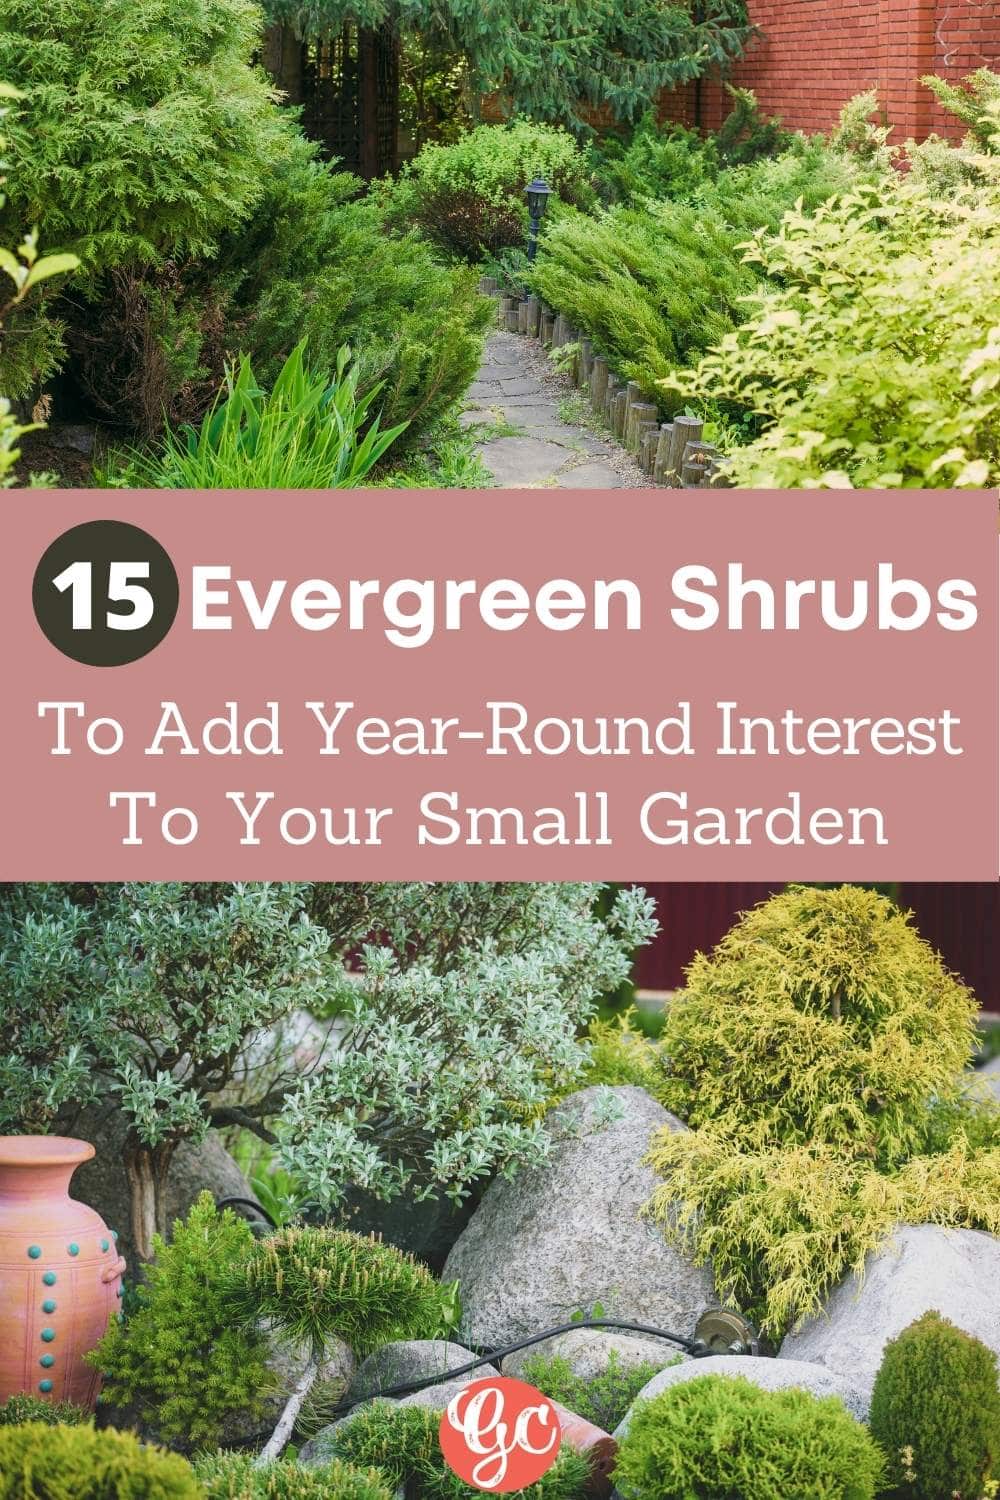  15 törpe örökzöld cserjék kis kertek és tájak számára